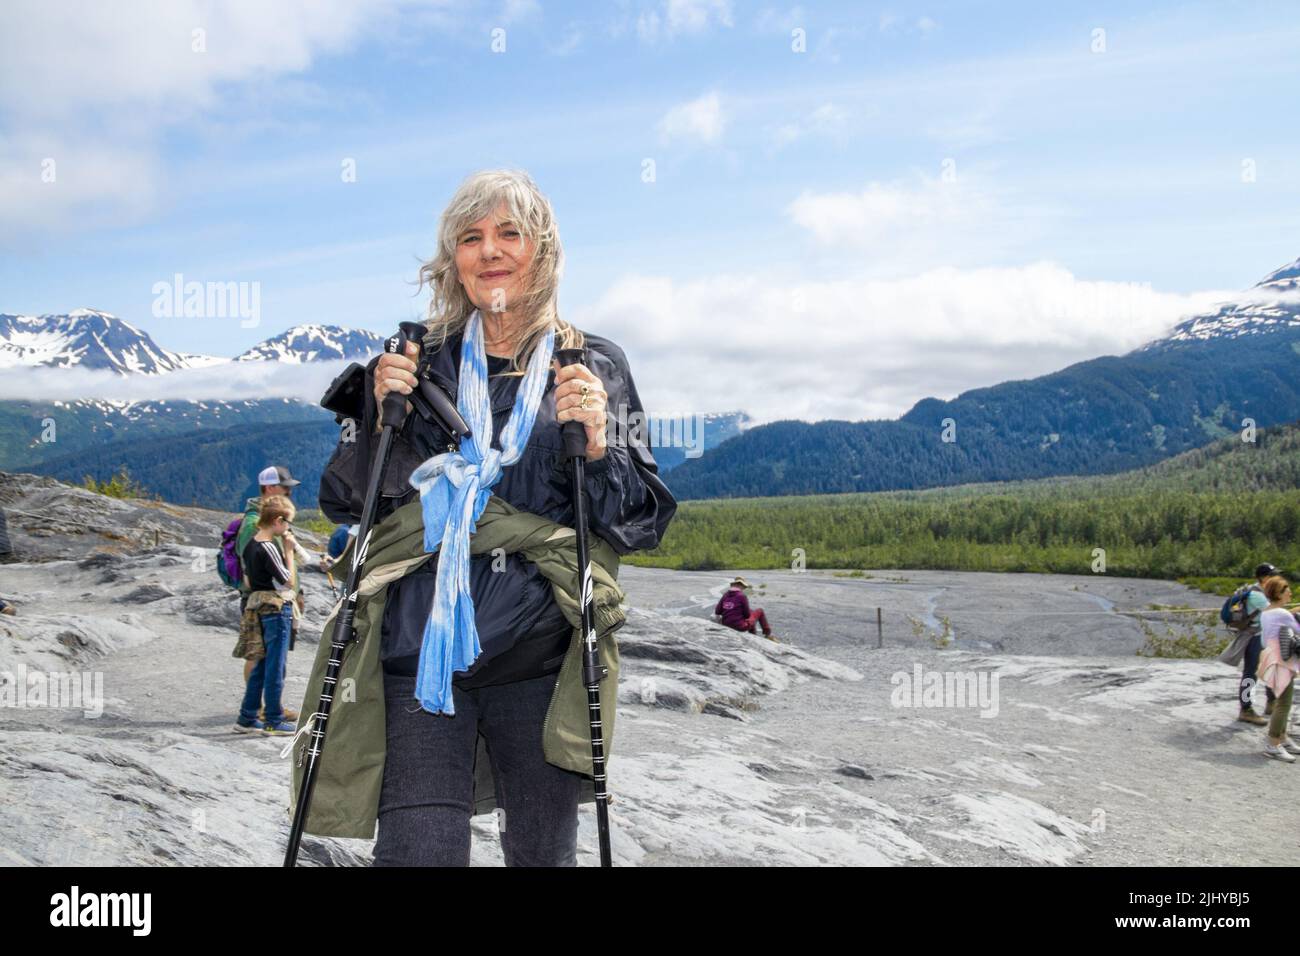 2022 06 24 sortie Glacier Alaska USA dame senior randonnée sur terrain accidenté en utilisant des bâtons de randonnée - manteau attaché autour de la taille - nos touristes et de montagnes brumeuses Banque D'Images